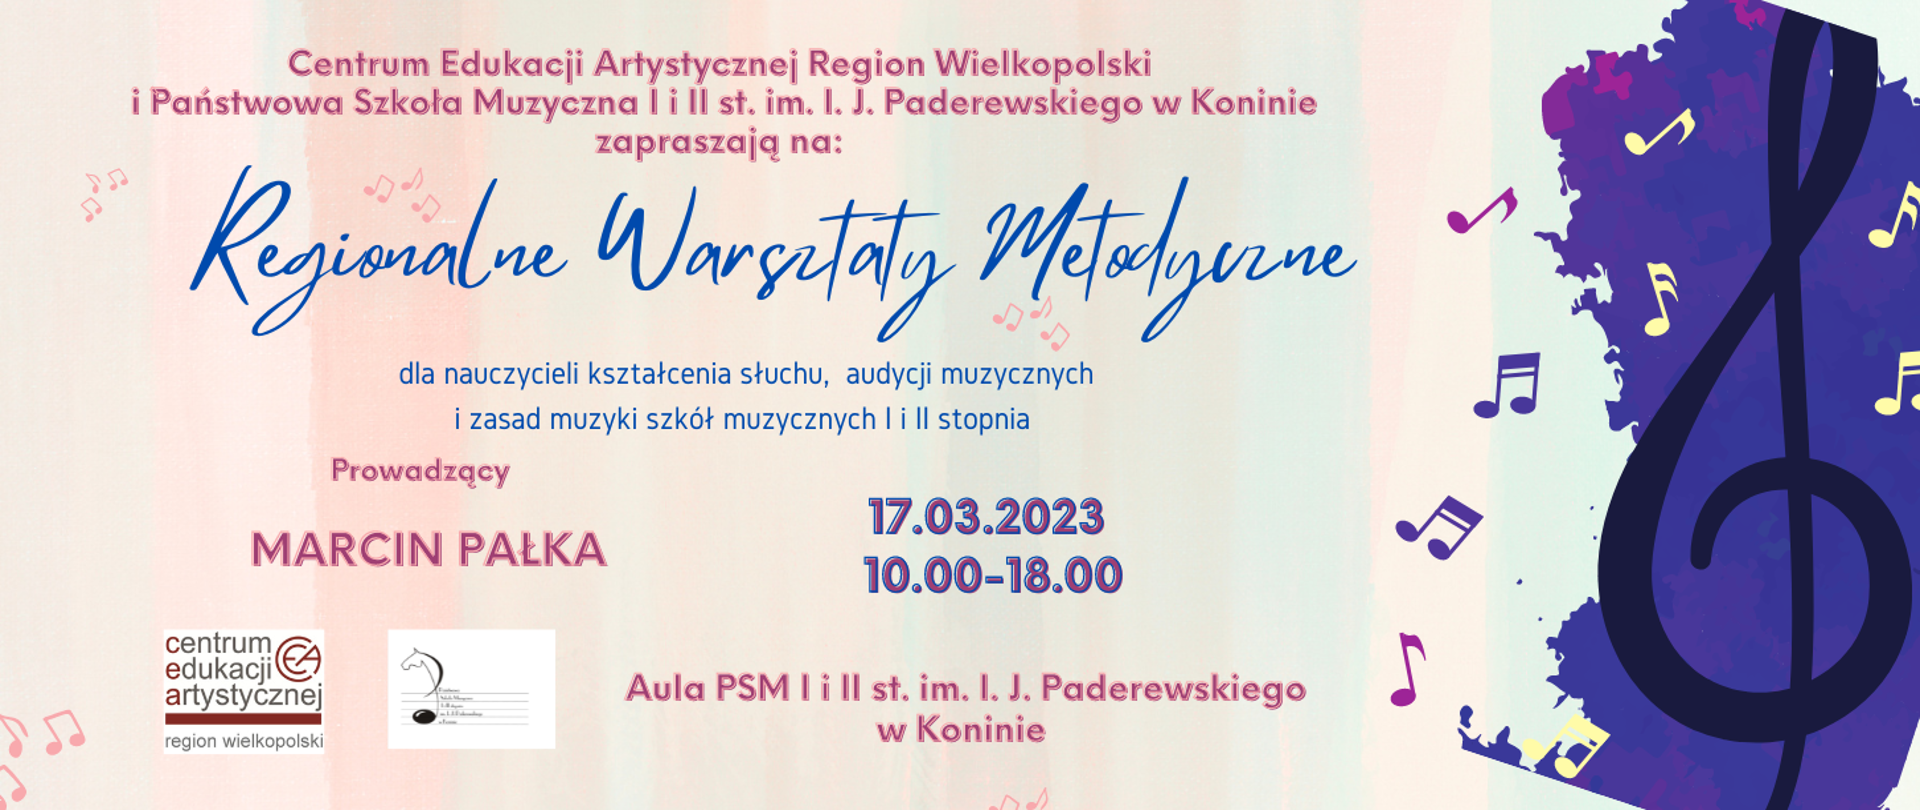 Plakat warsztatów na kremowym tle logo PSM w Koninie i CEA Region Wielkopolski, po prawej czarny klucz wiolinowy na fioletowym tle.